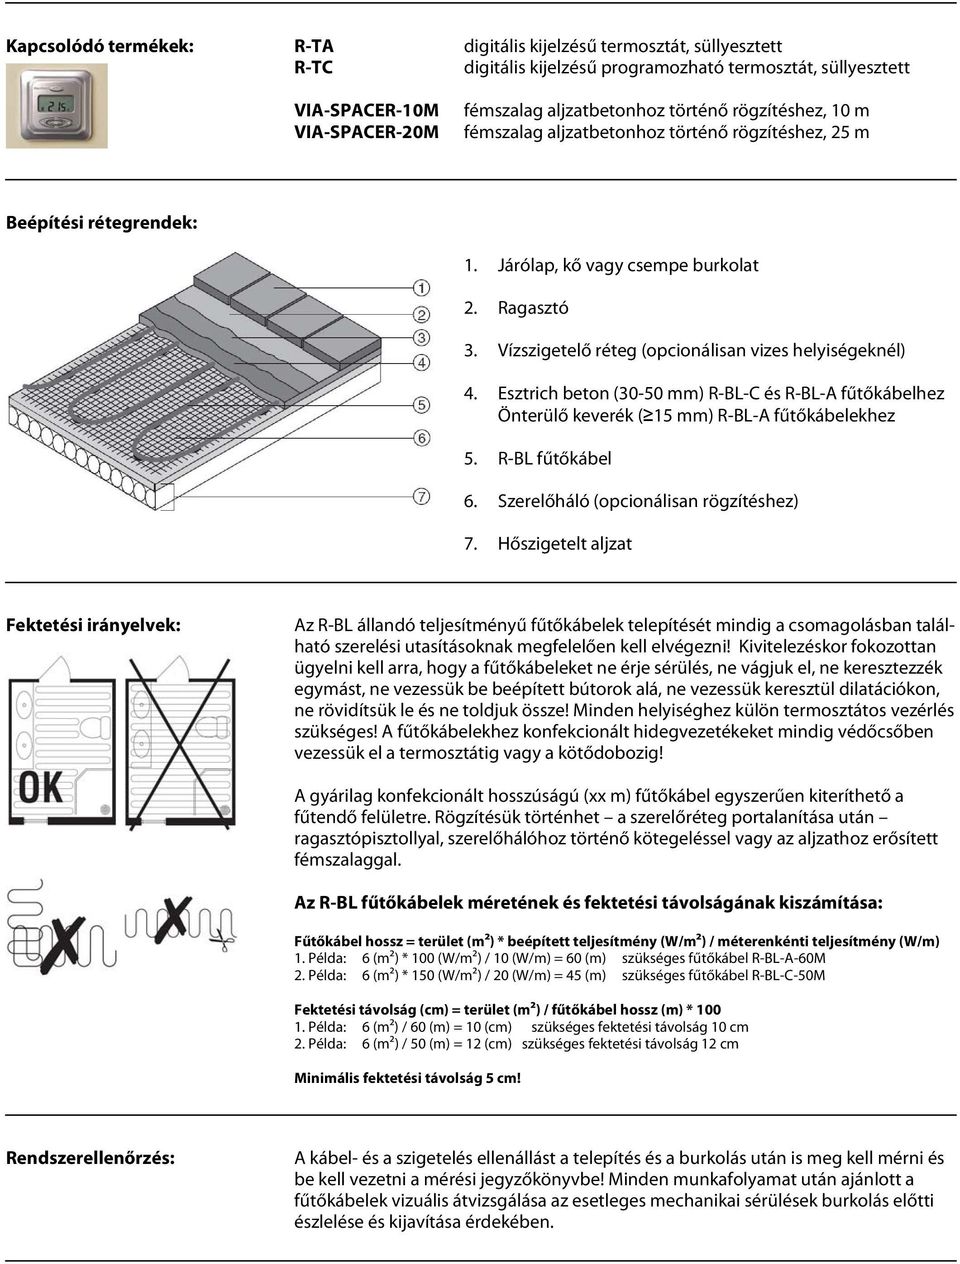 R EM2-CM fűtőszőnyeg kültéri burkolatok hó- és jégmentesítésére - PDF  Ingyenes letöltés